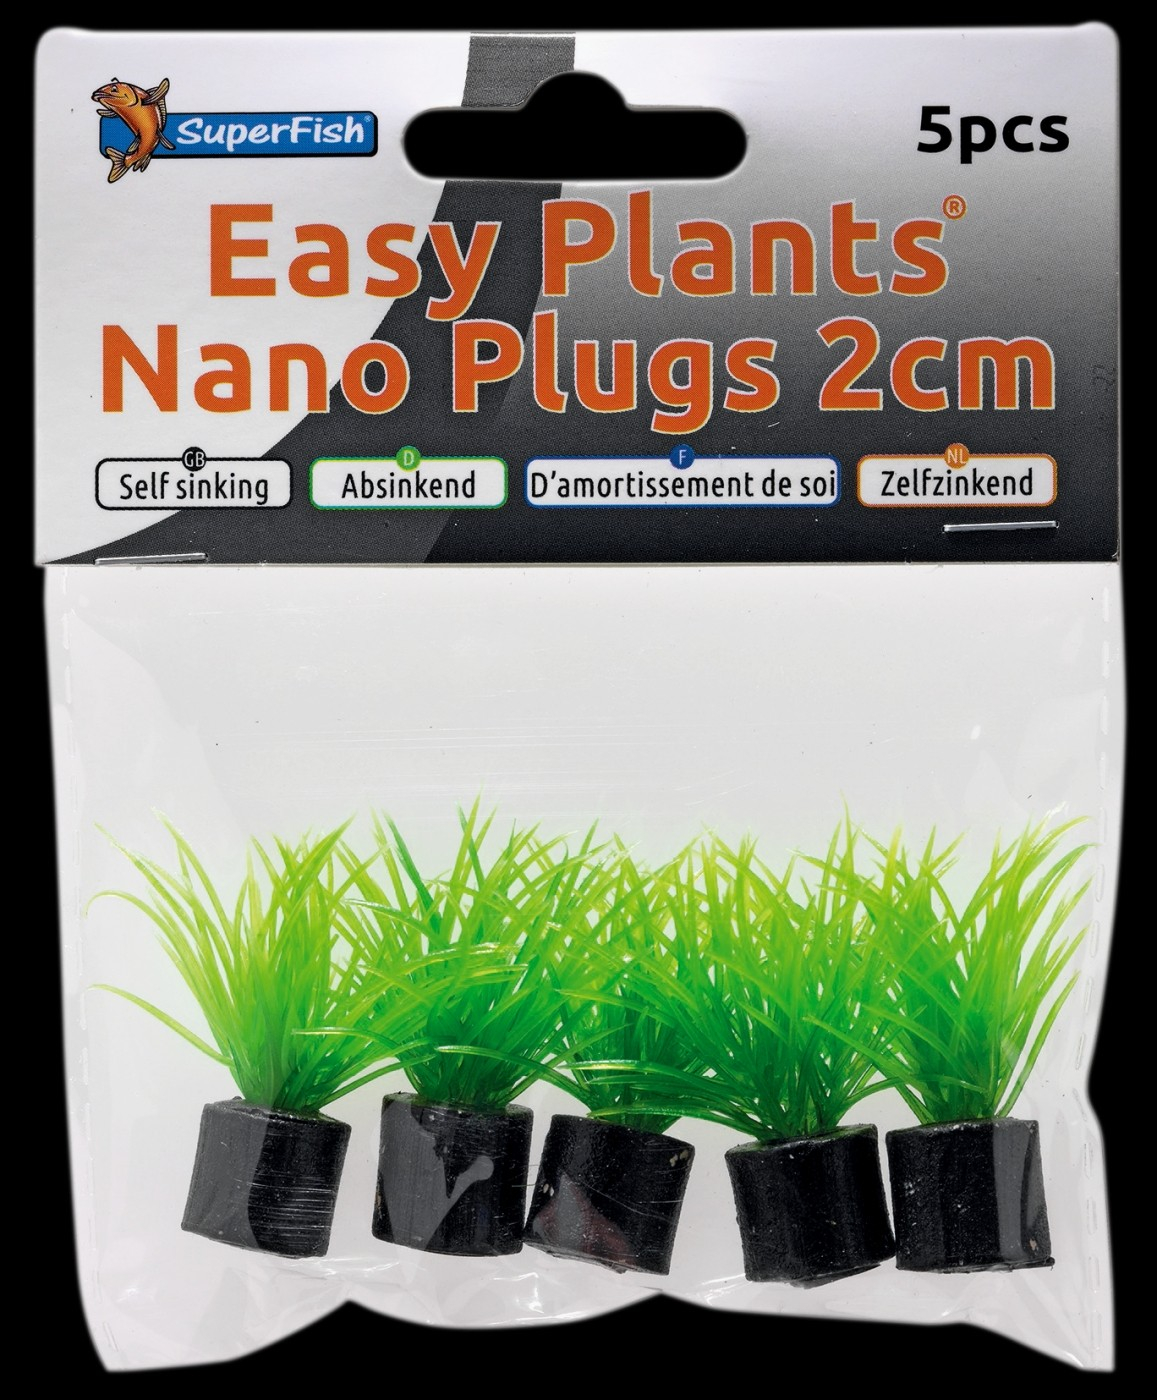 SuperFish Easy Plants Nano plugs 2cm